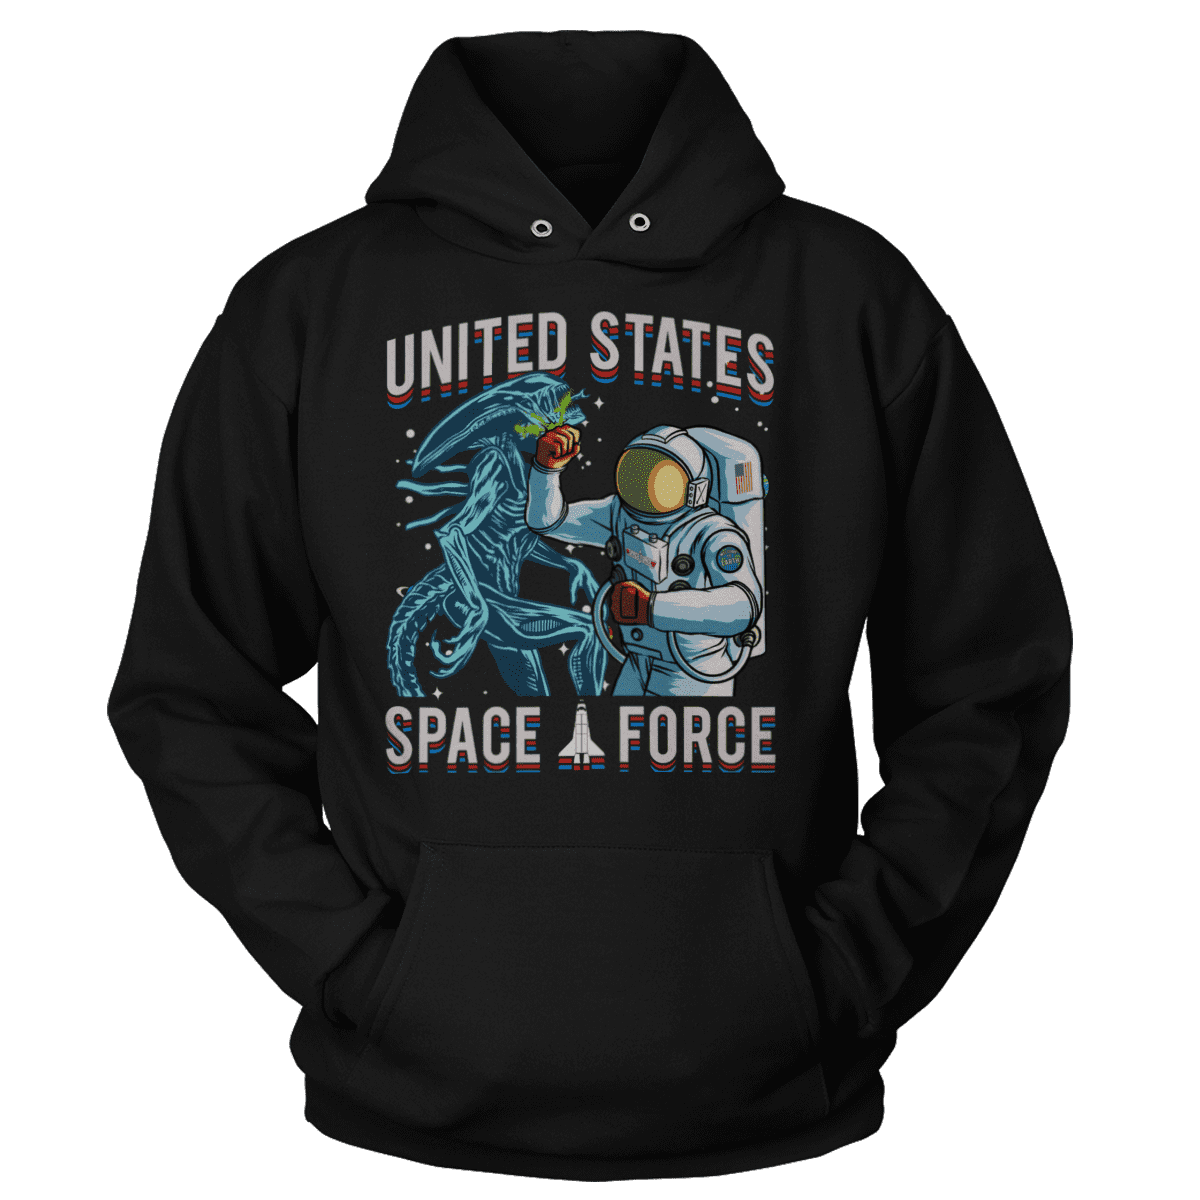 Space Force: Alien Punch (parody) (Ladies)